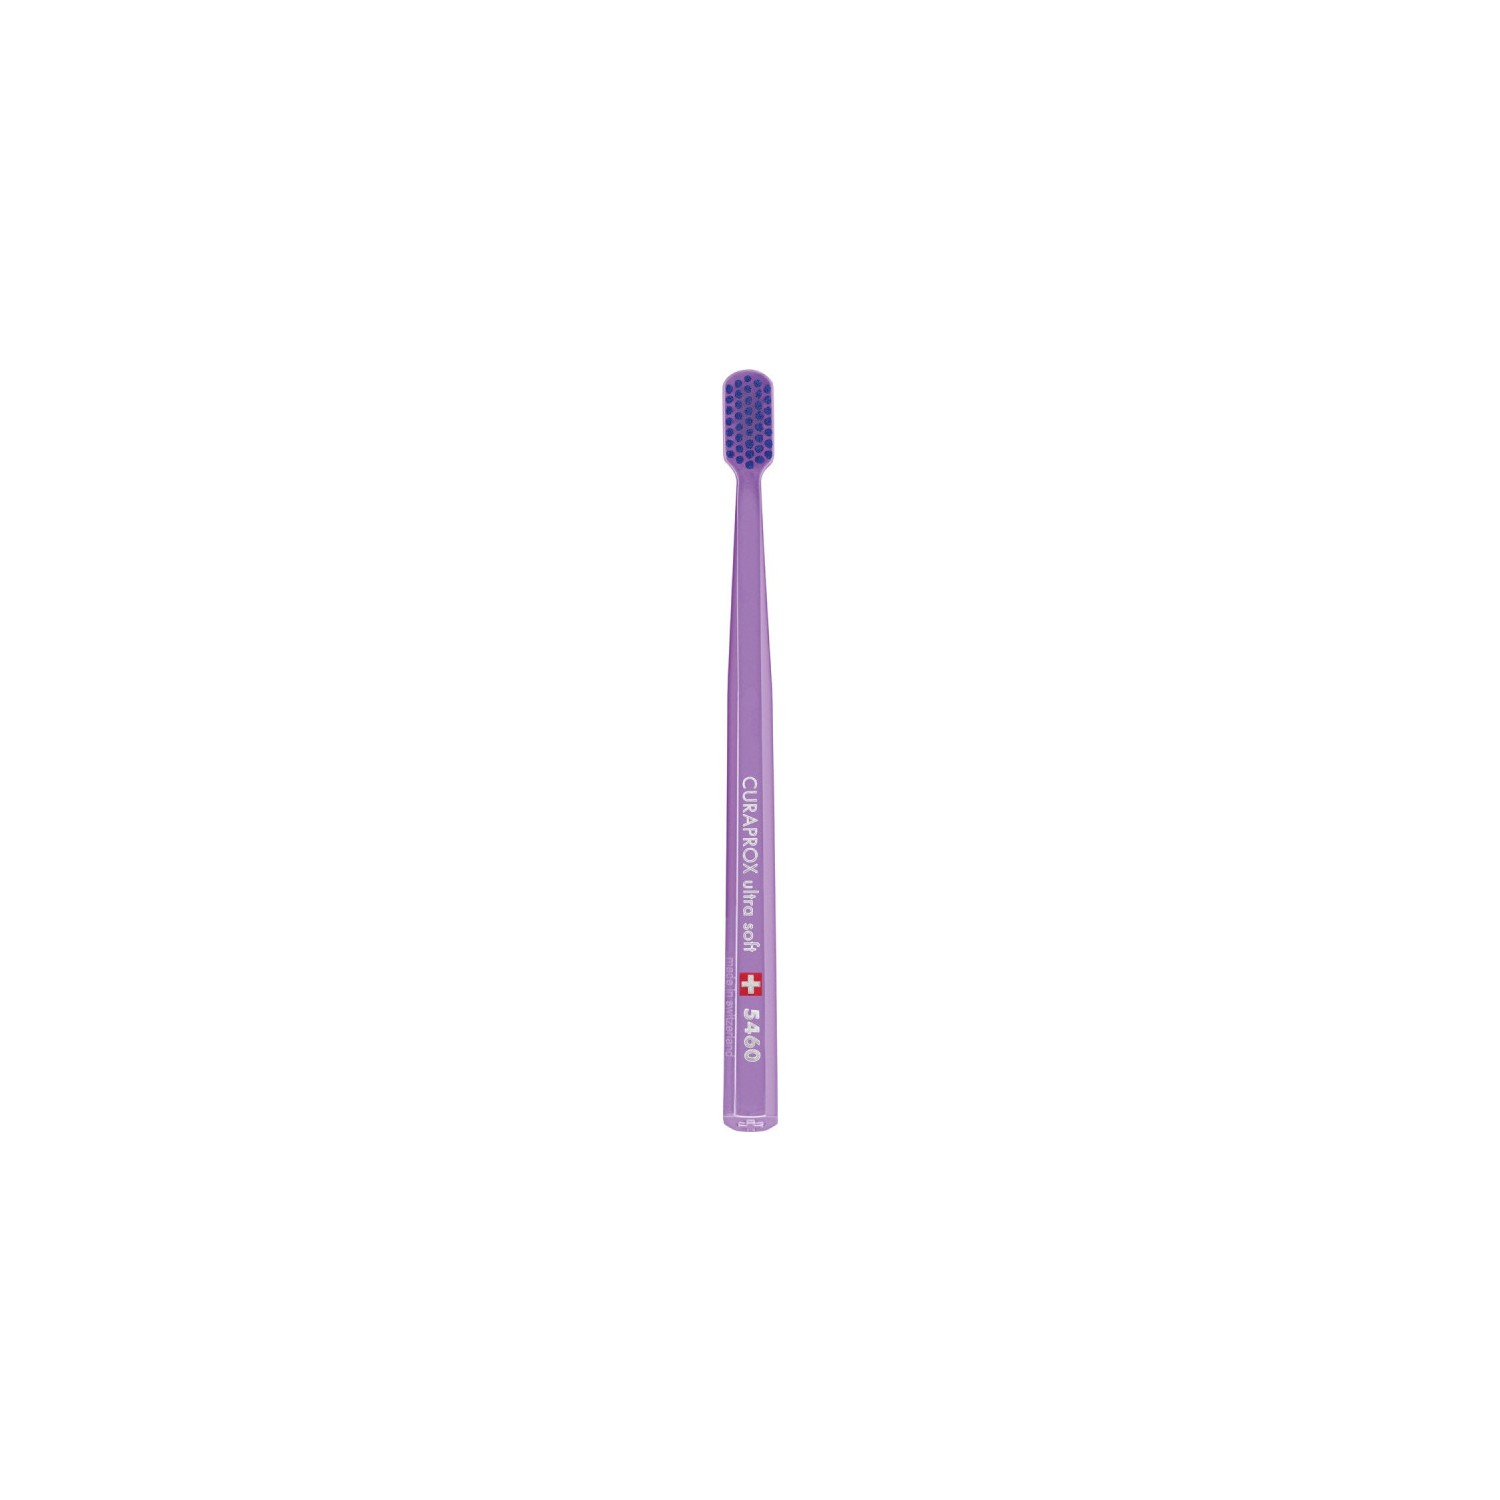 Зубная щетка Curaprox ультрамягкая CS5460, фиолетовый household electric toothbrush usb charging soft hair waterproof wave vibration toothbrush